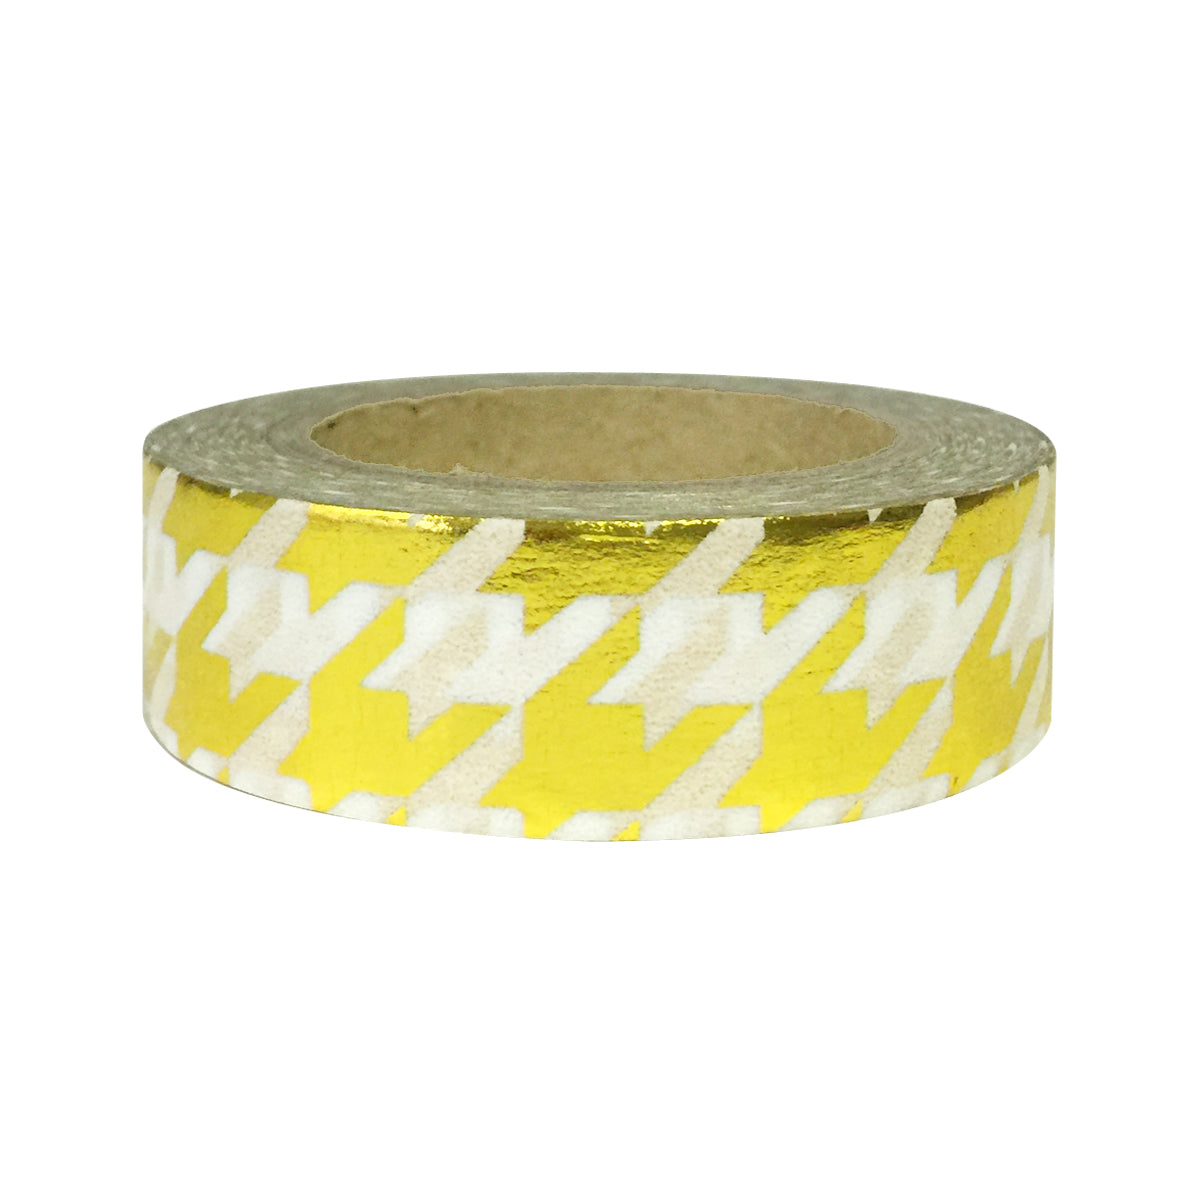 Wrapables Washi Tapes Decorative Masking Tapes, Set of 12, ADSET62